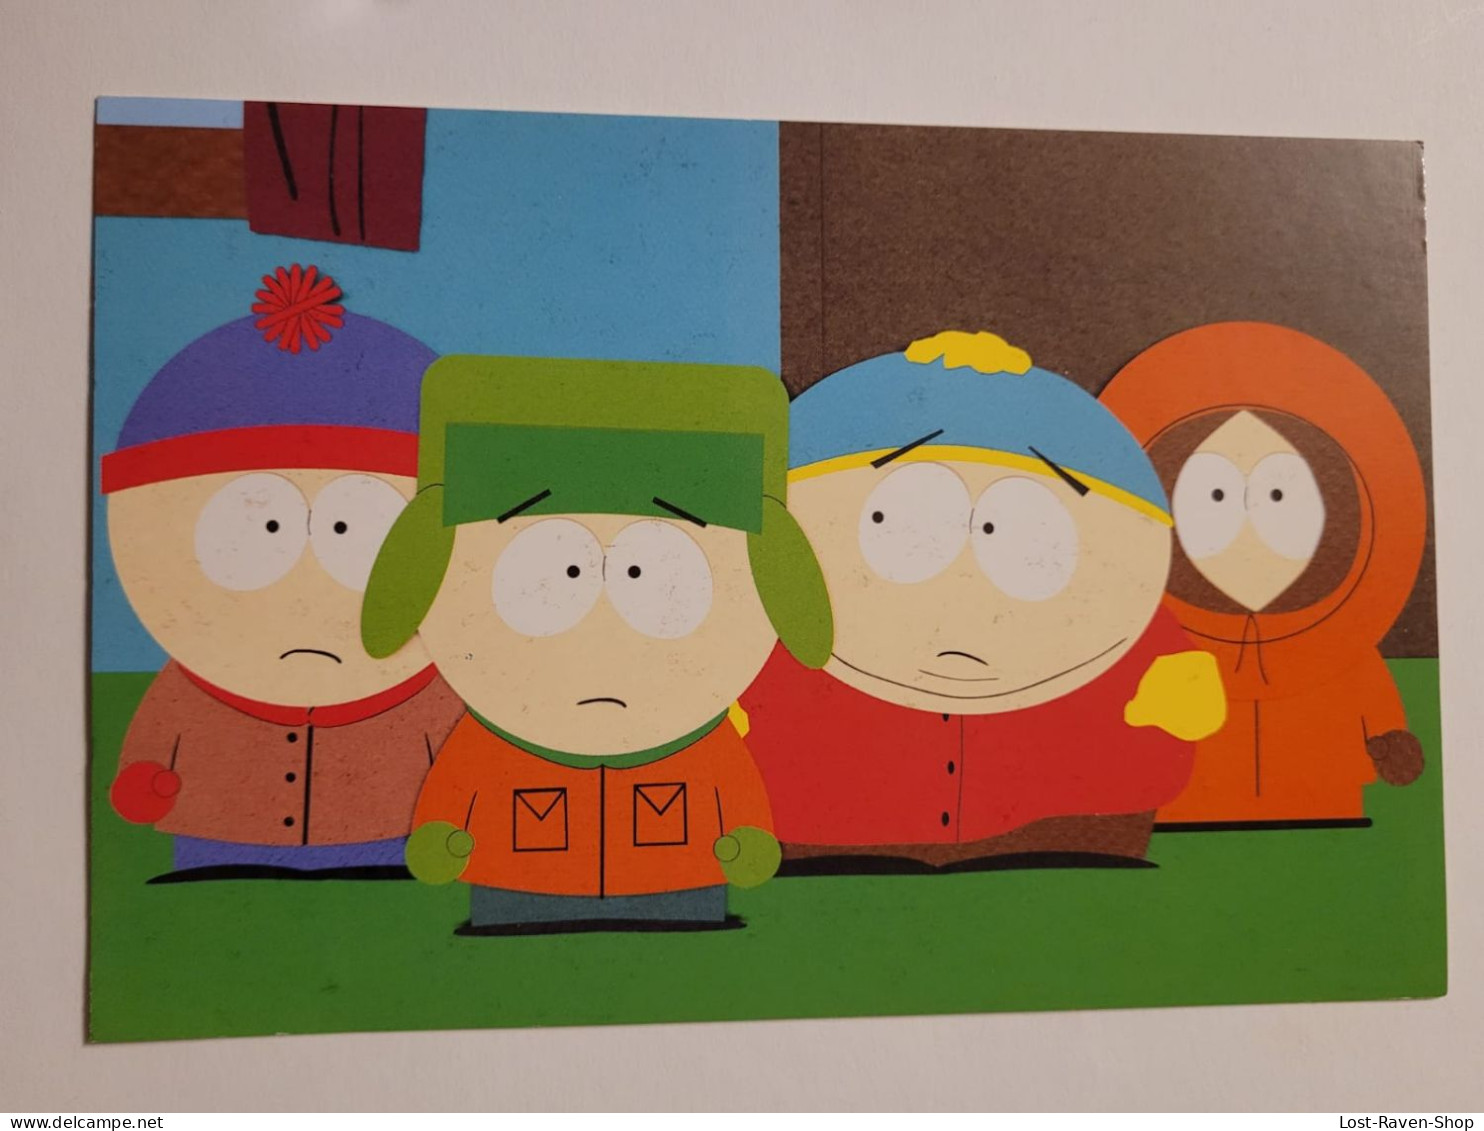 South Park - Series De Televisión